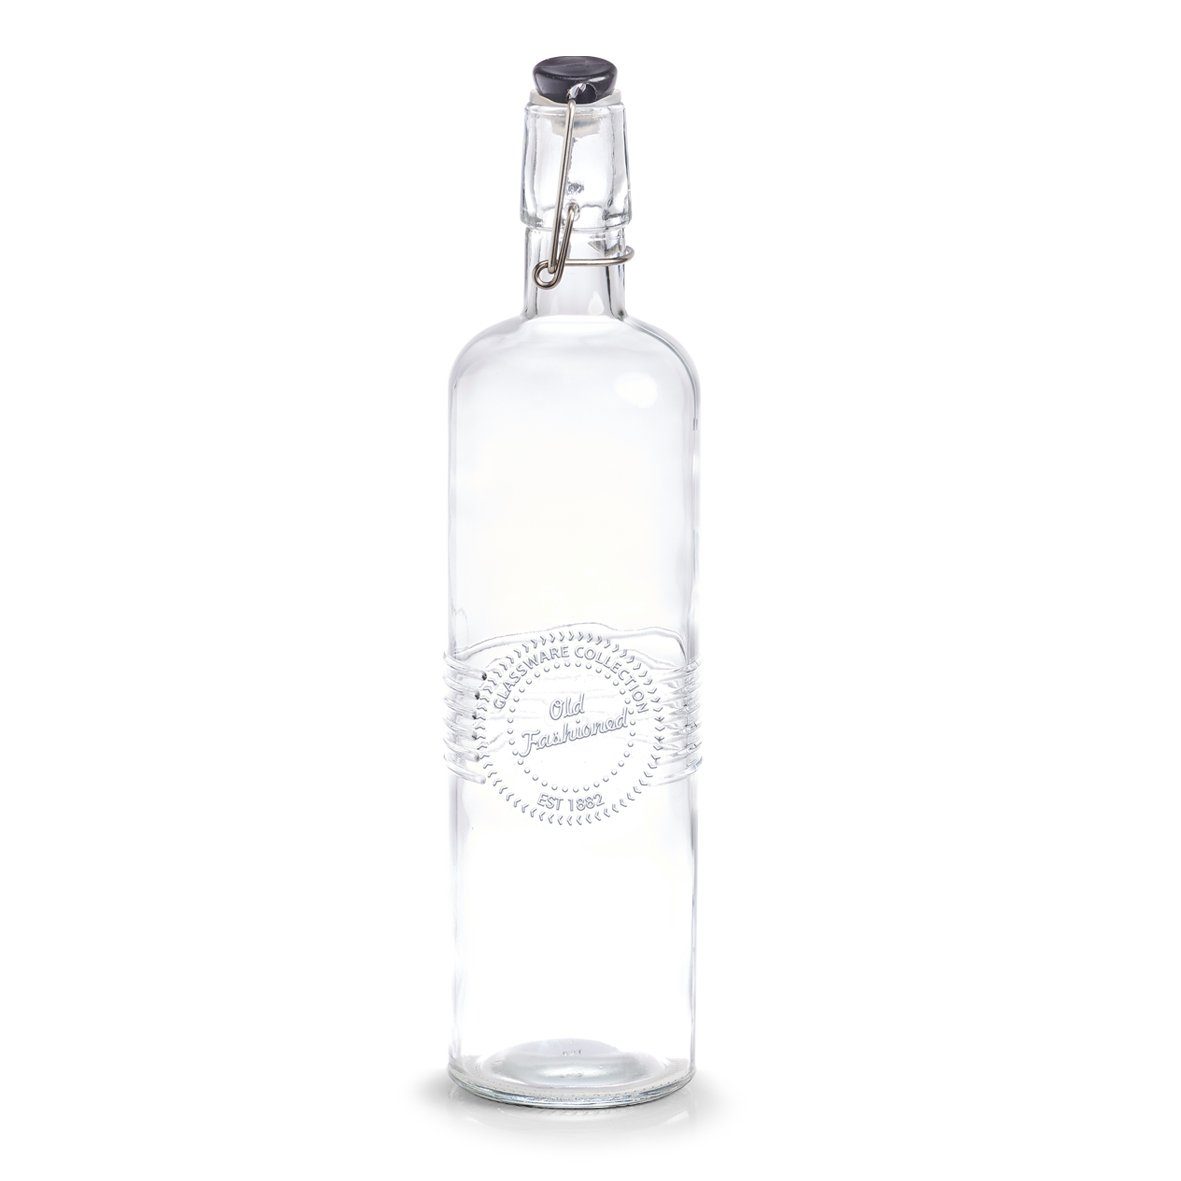 Glas/Metall/Kunststoff, Ø7,2 x "Old ml, Glasflasche cm 29,5 fashioned, schwarz, Trinkflasche 730 Zeller Present